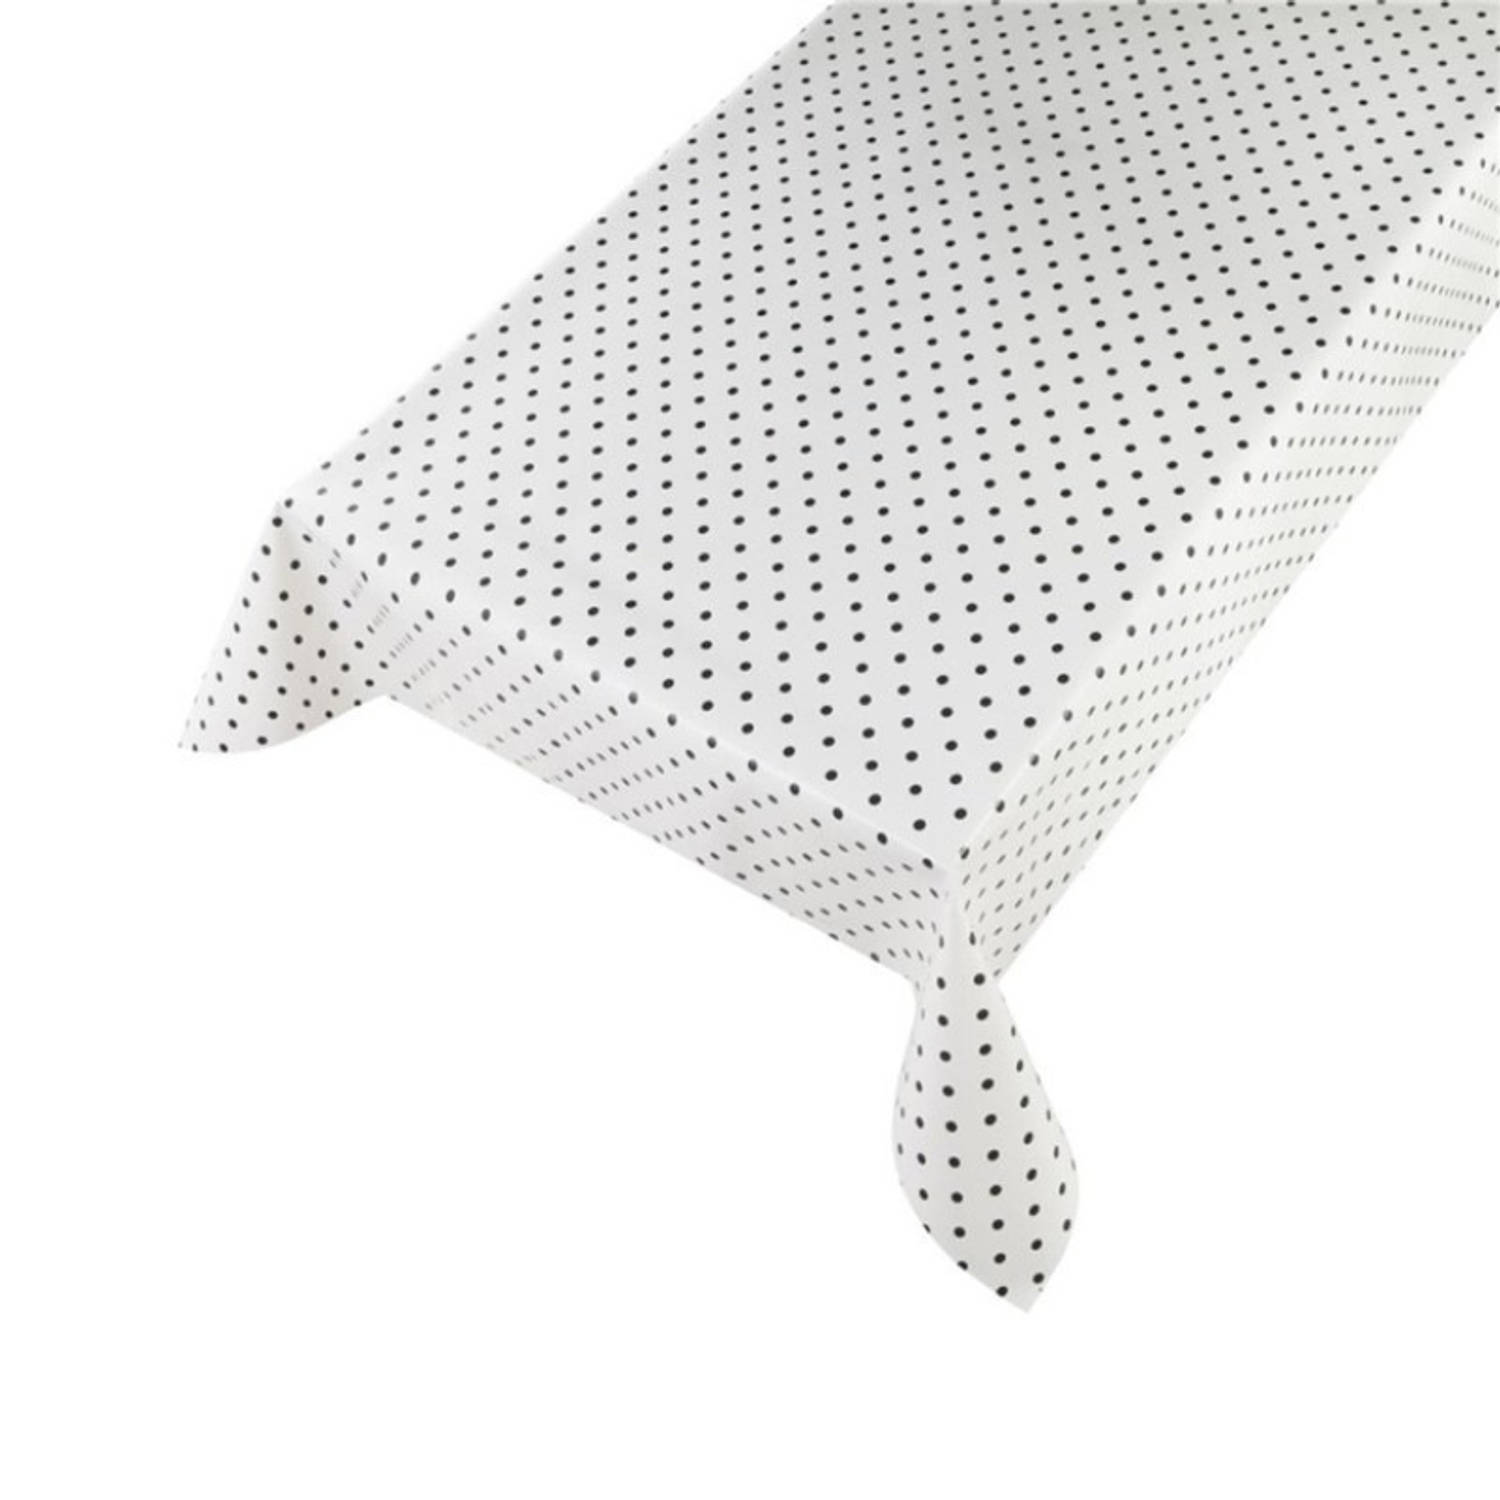 Tafelzeil/tafelkleed wit met zwarte stippen 140 x 175 cm - Tafelzeilen